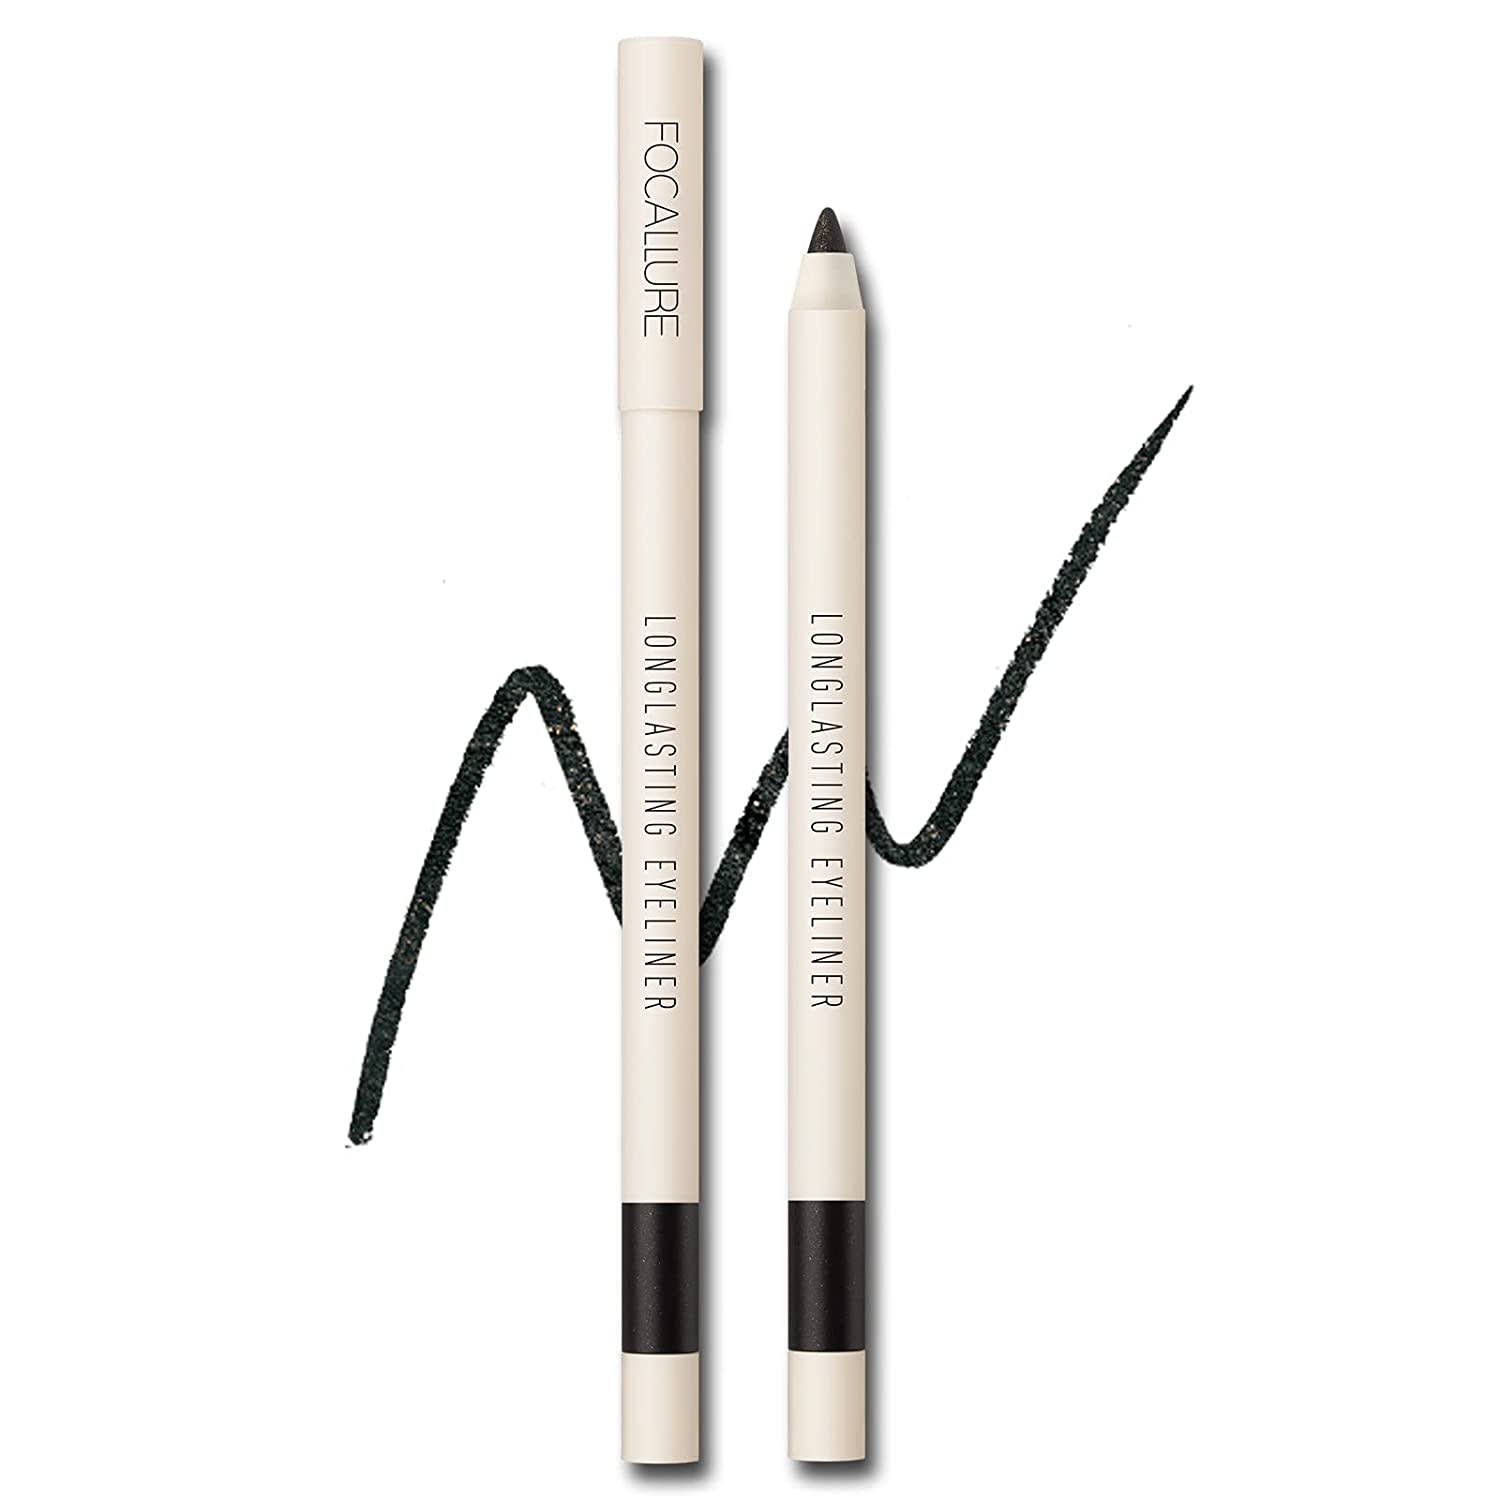 Focallure Long Lasting Gel Eyeliner Pencil Waterproof_1